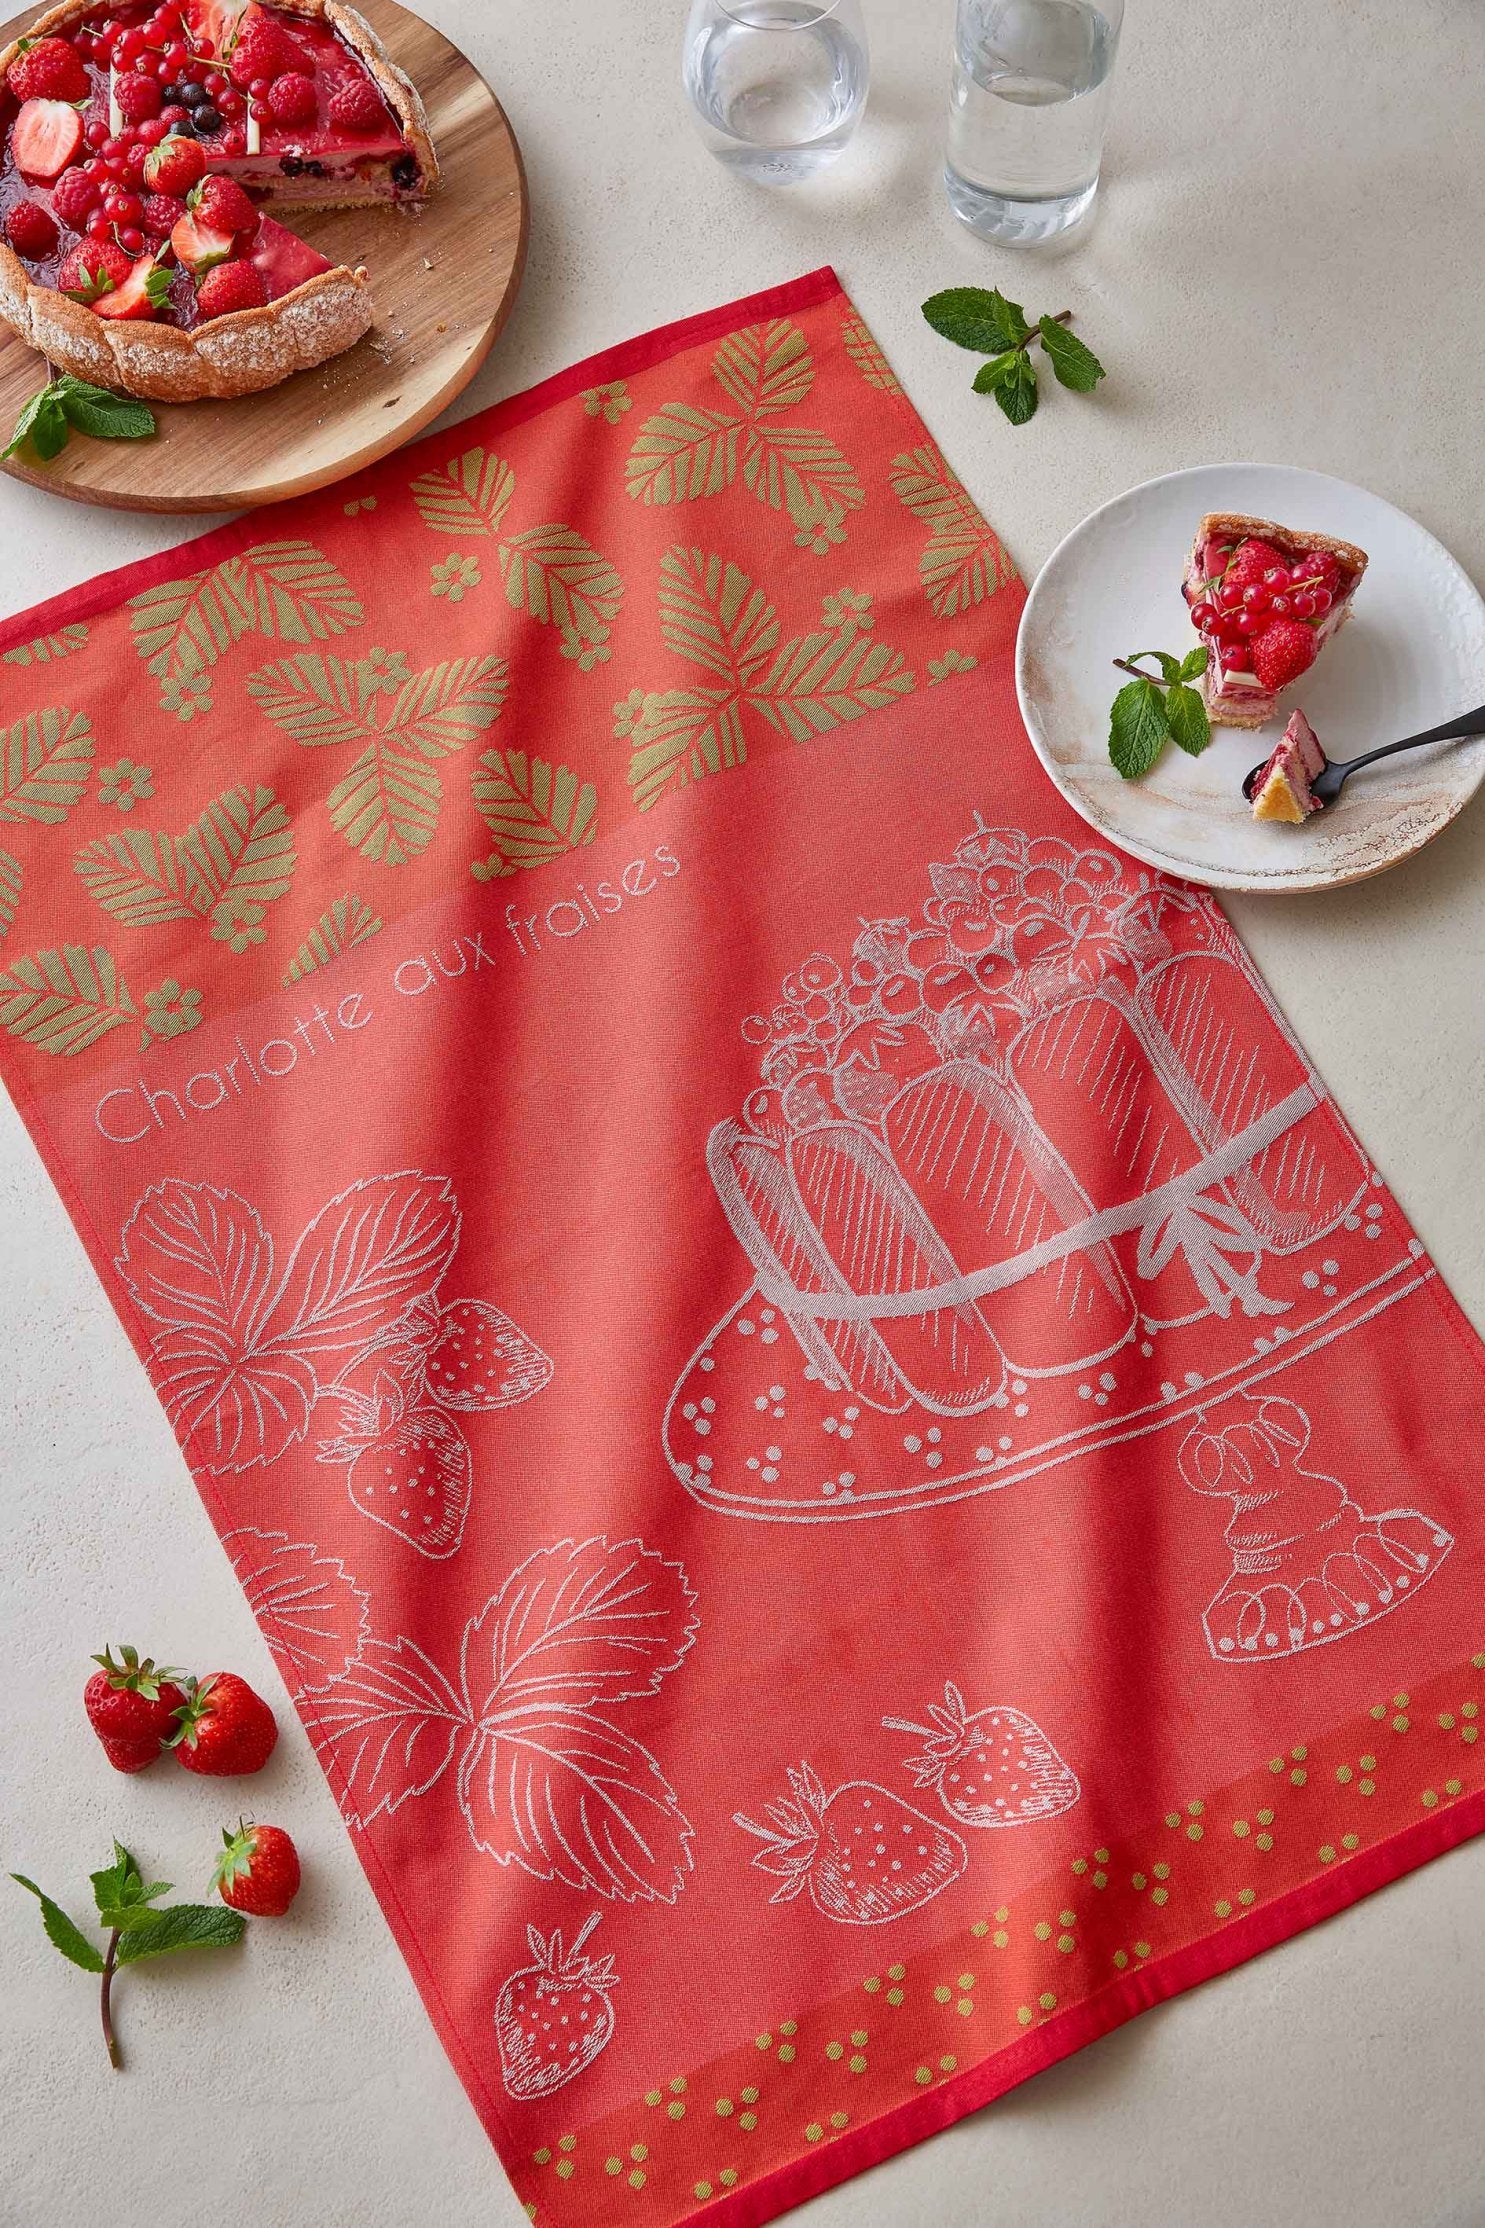 Coucke "Charlotte aux fraises", Woven cotton tea towel. Designed in France.